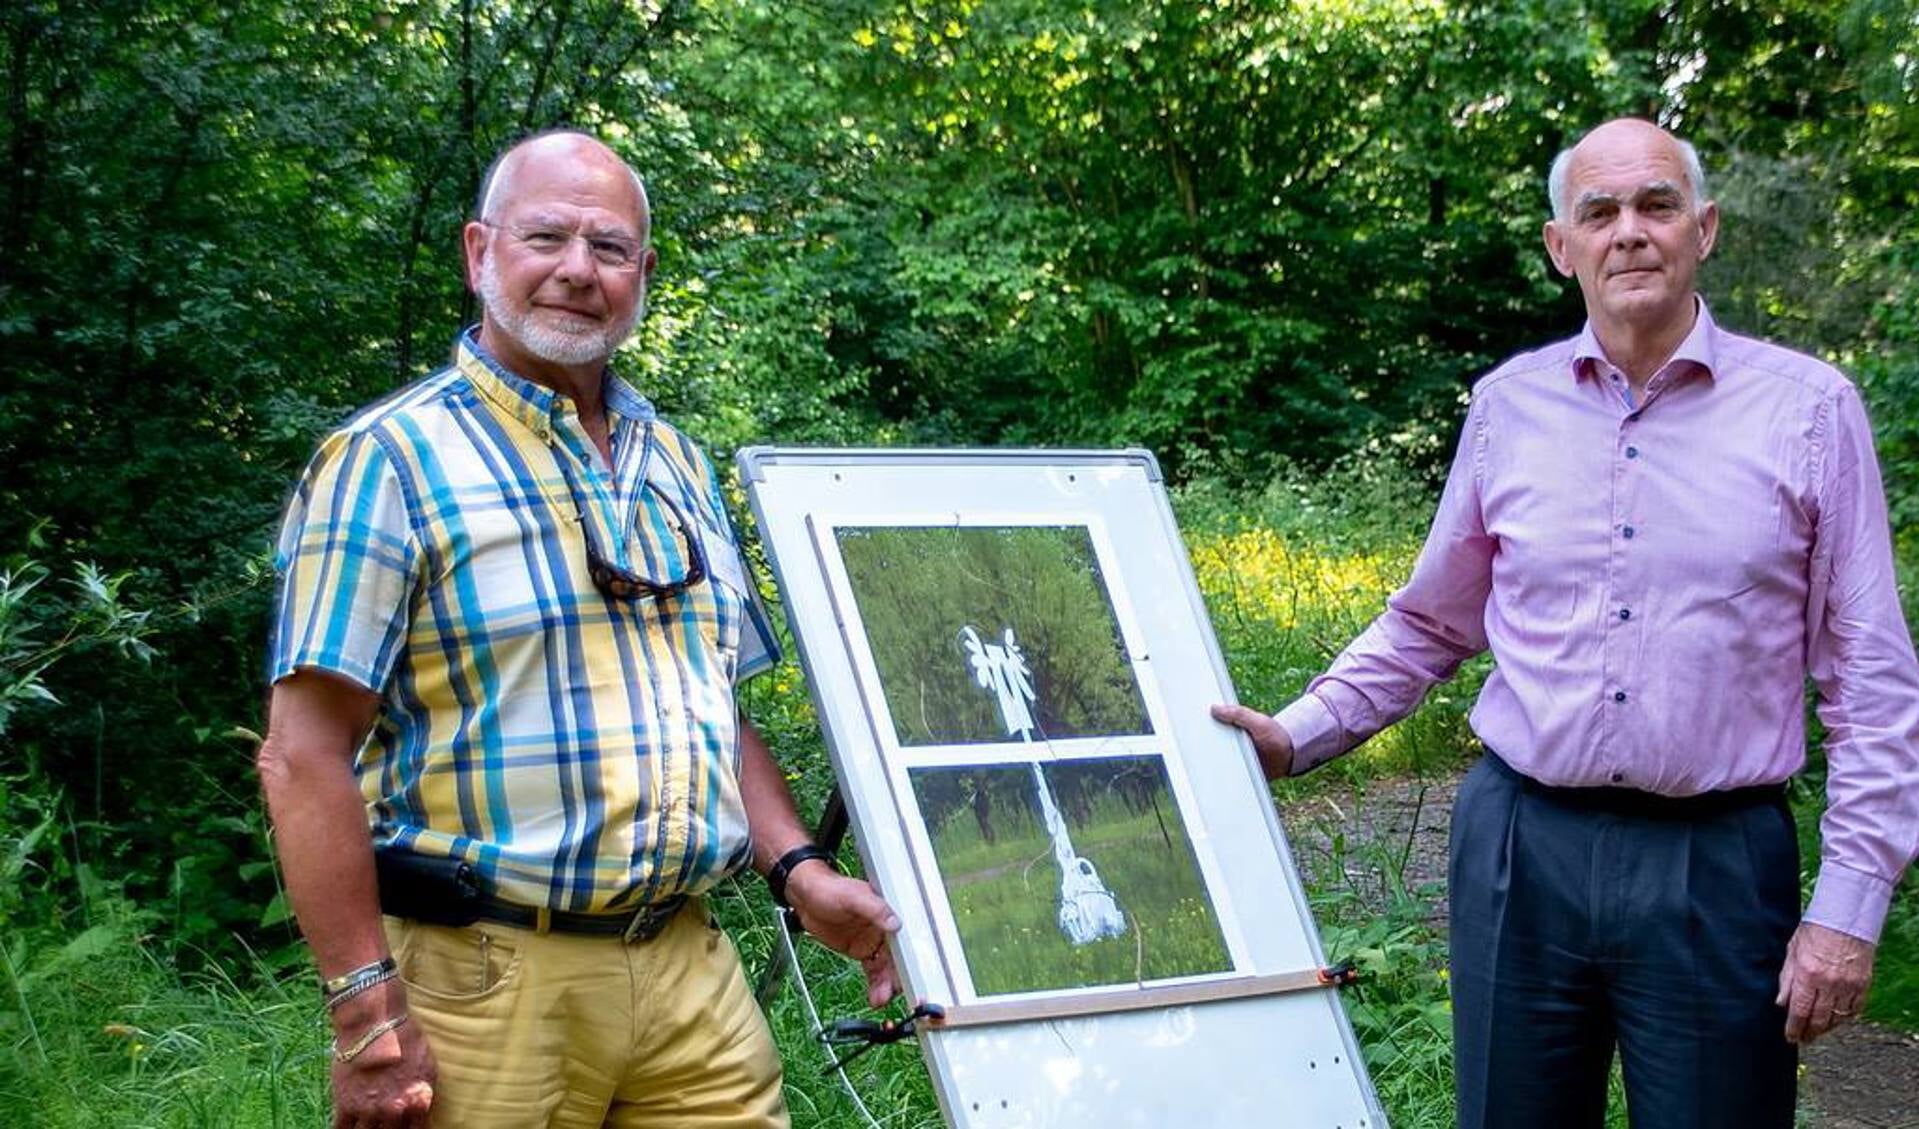 Wethouder Jeff Gardenier (rechts) heeft de puzzel klaar en daarmee de tentoonstelling geopend. Links staat voorzitter Jos Gerrese van de Stichting Kunst in de Heemtuin.